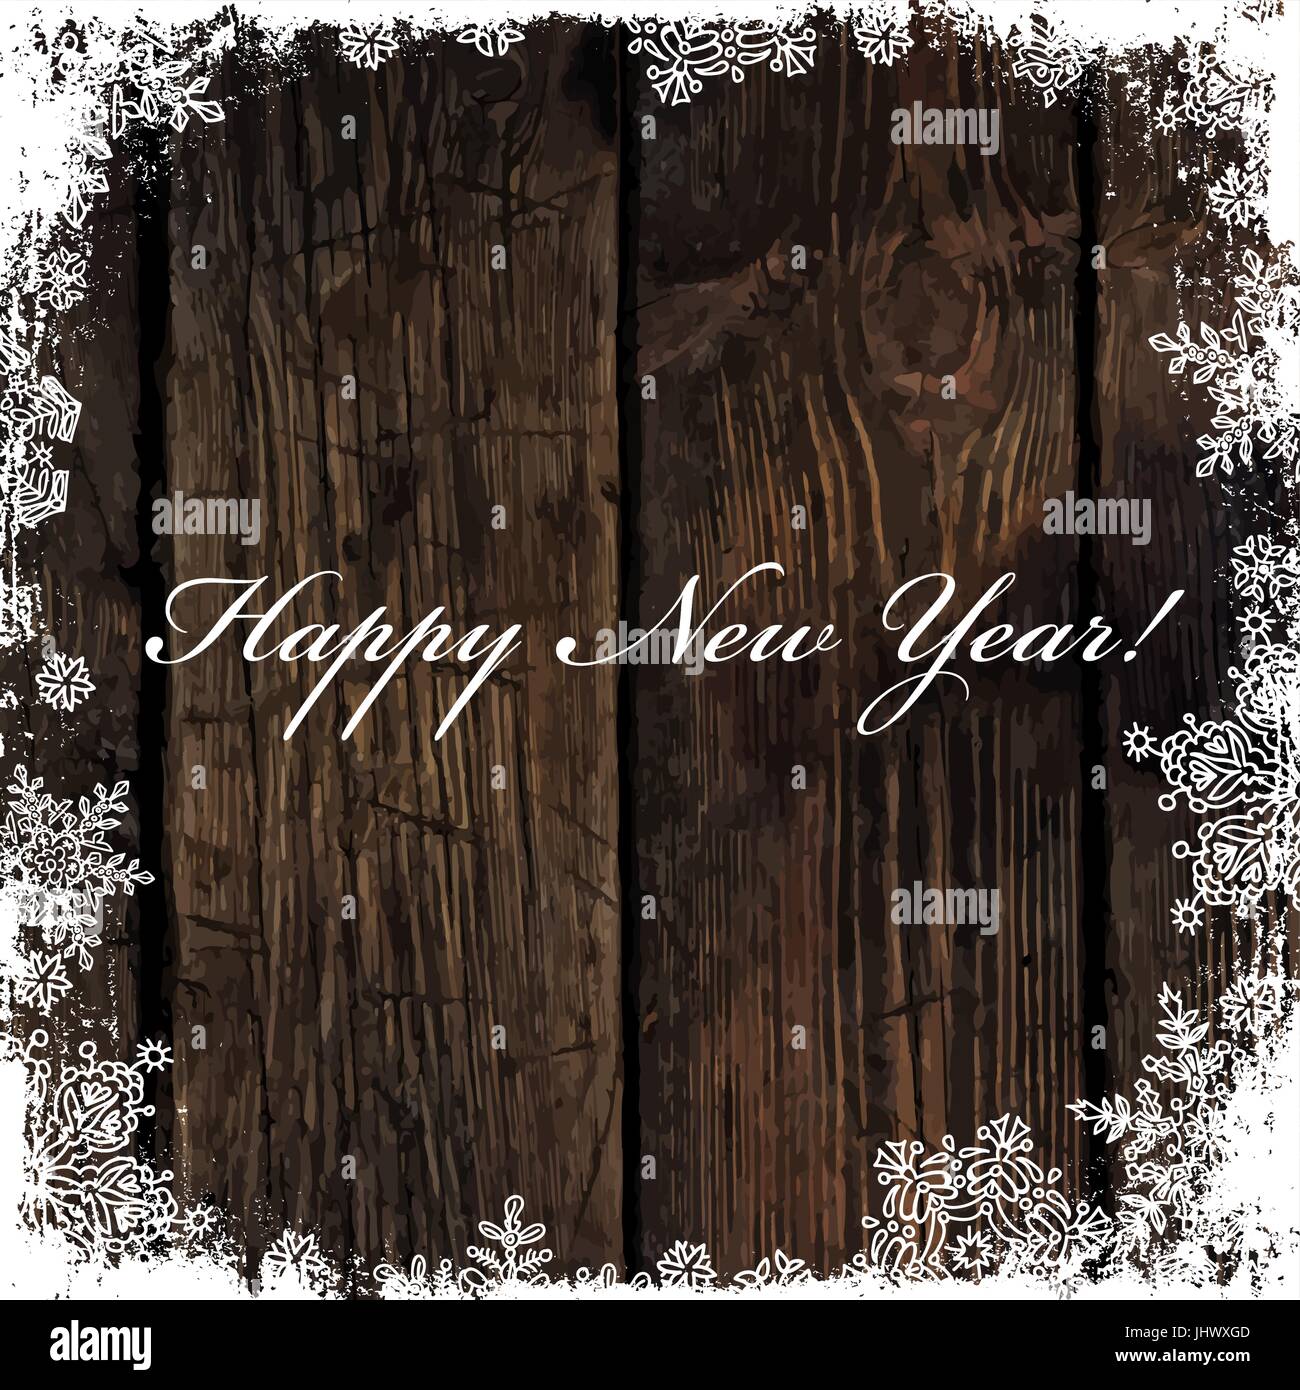 Felice Anno Nuovo! Saluto su sfondo di legno. I fiocchi di neve telaio isolato. Facile da utilizzare nei progetti di design per le vacanze, come cartolina, inviti, COV Illustrazione Vettoriale